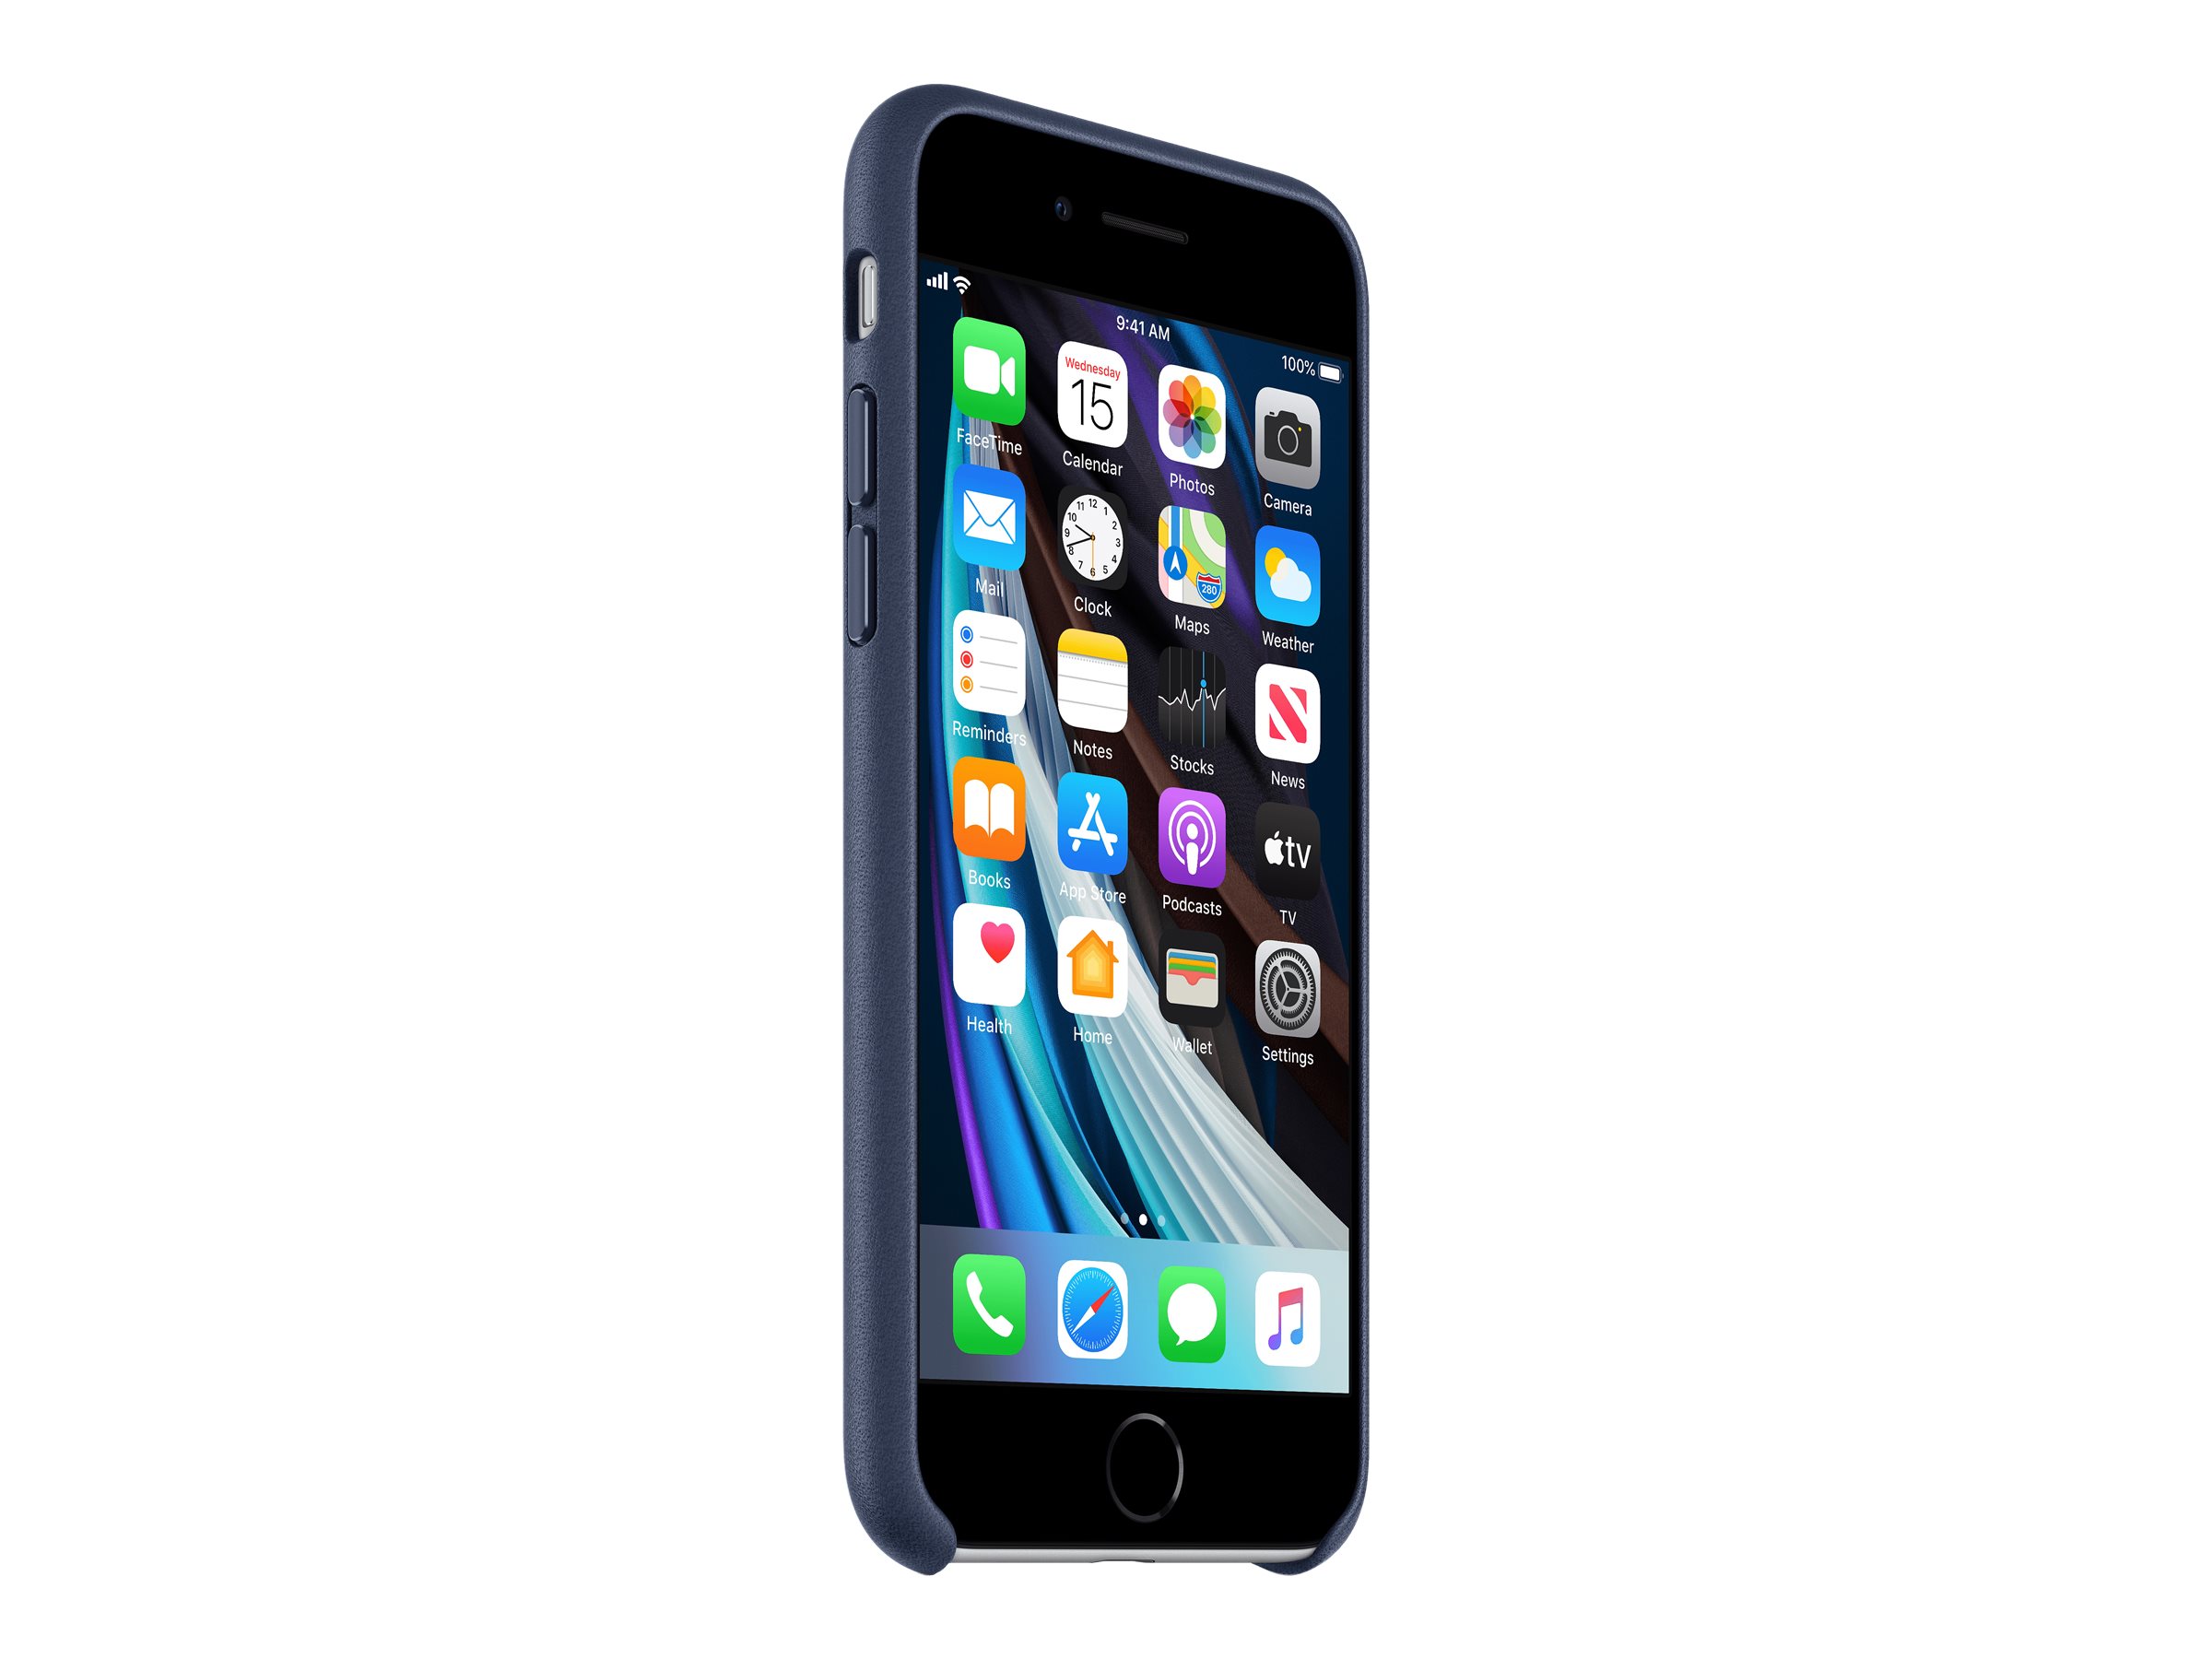 Apple Hintere Abdeckung für Mobiltelefon - Leder - Mitternachtsblau - für iPhone 7, 8, SE (2. Generation)